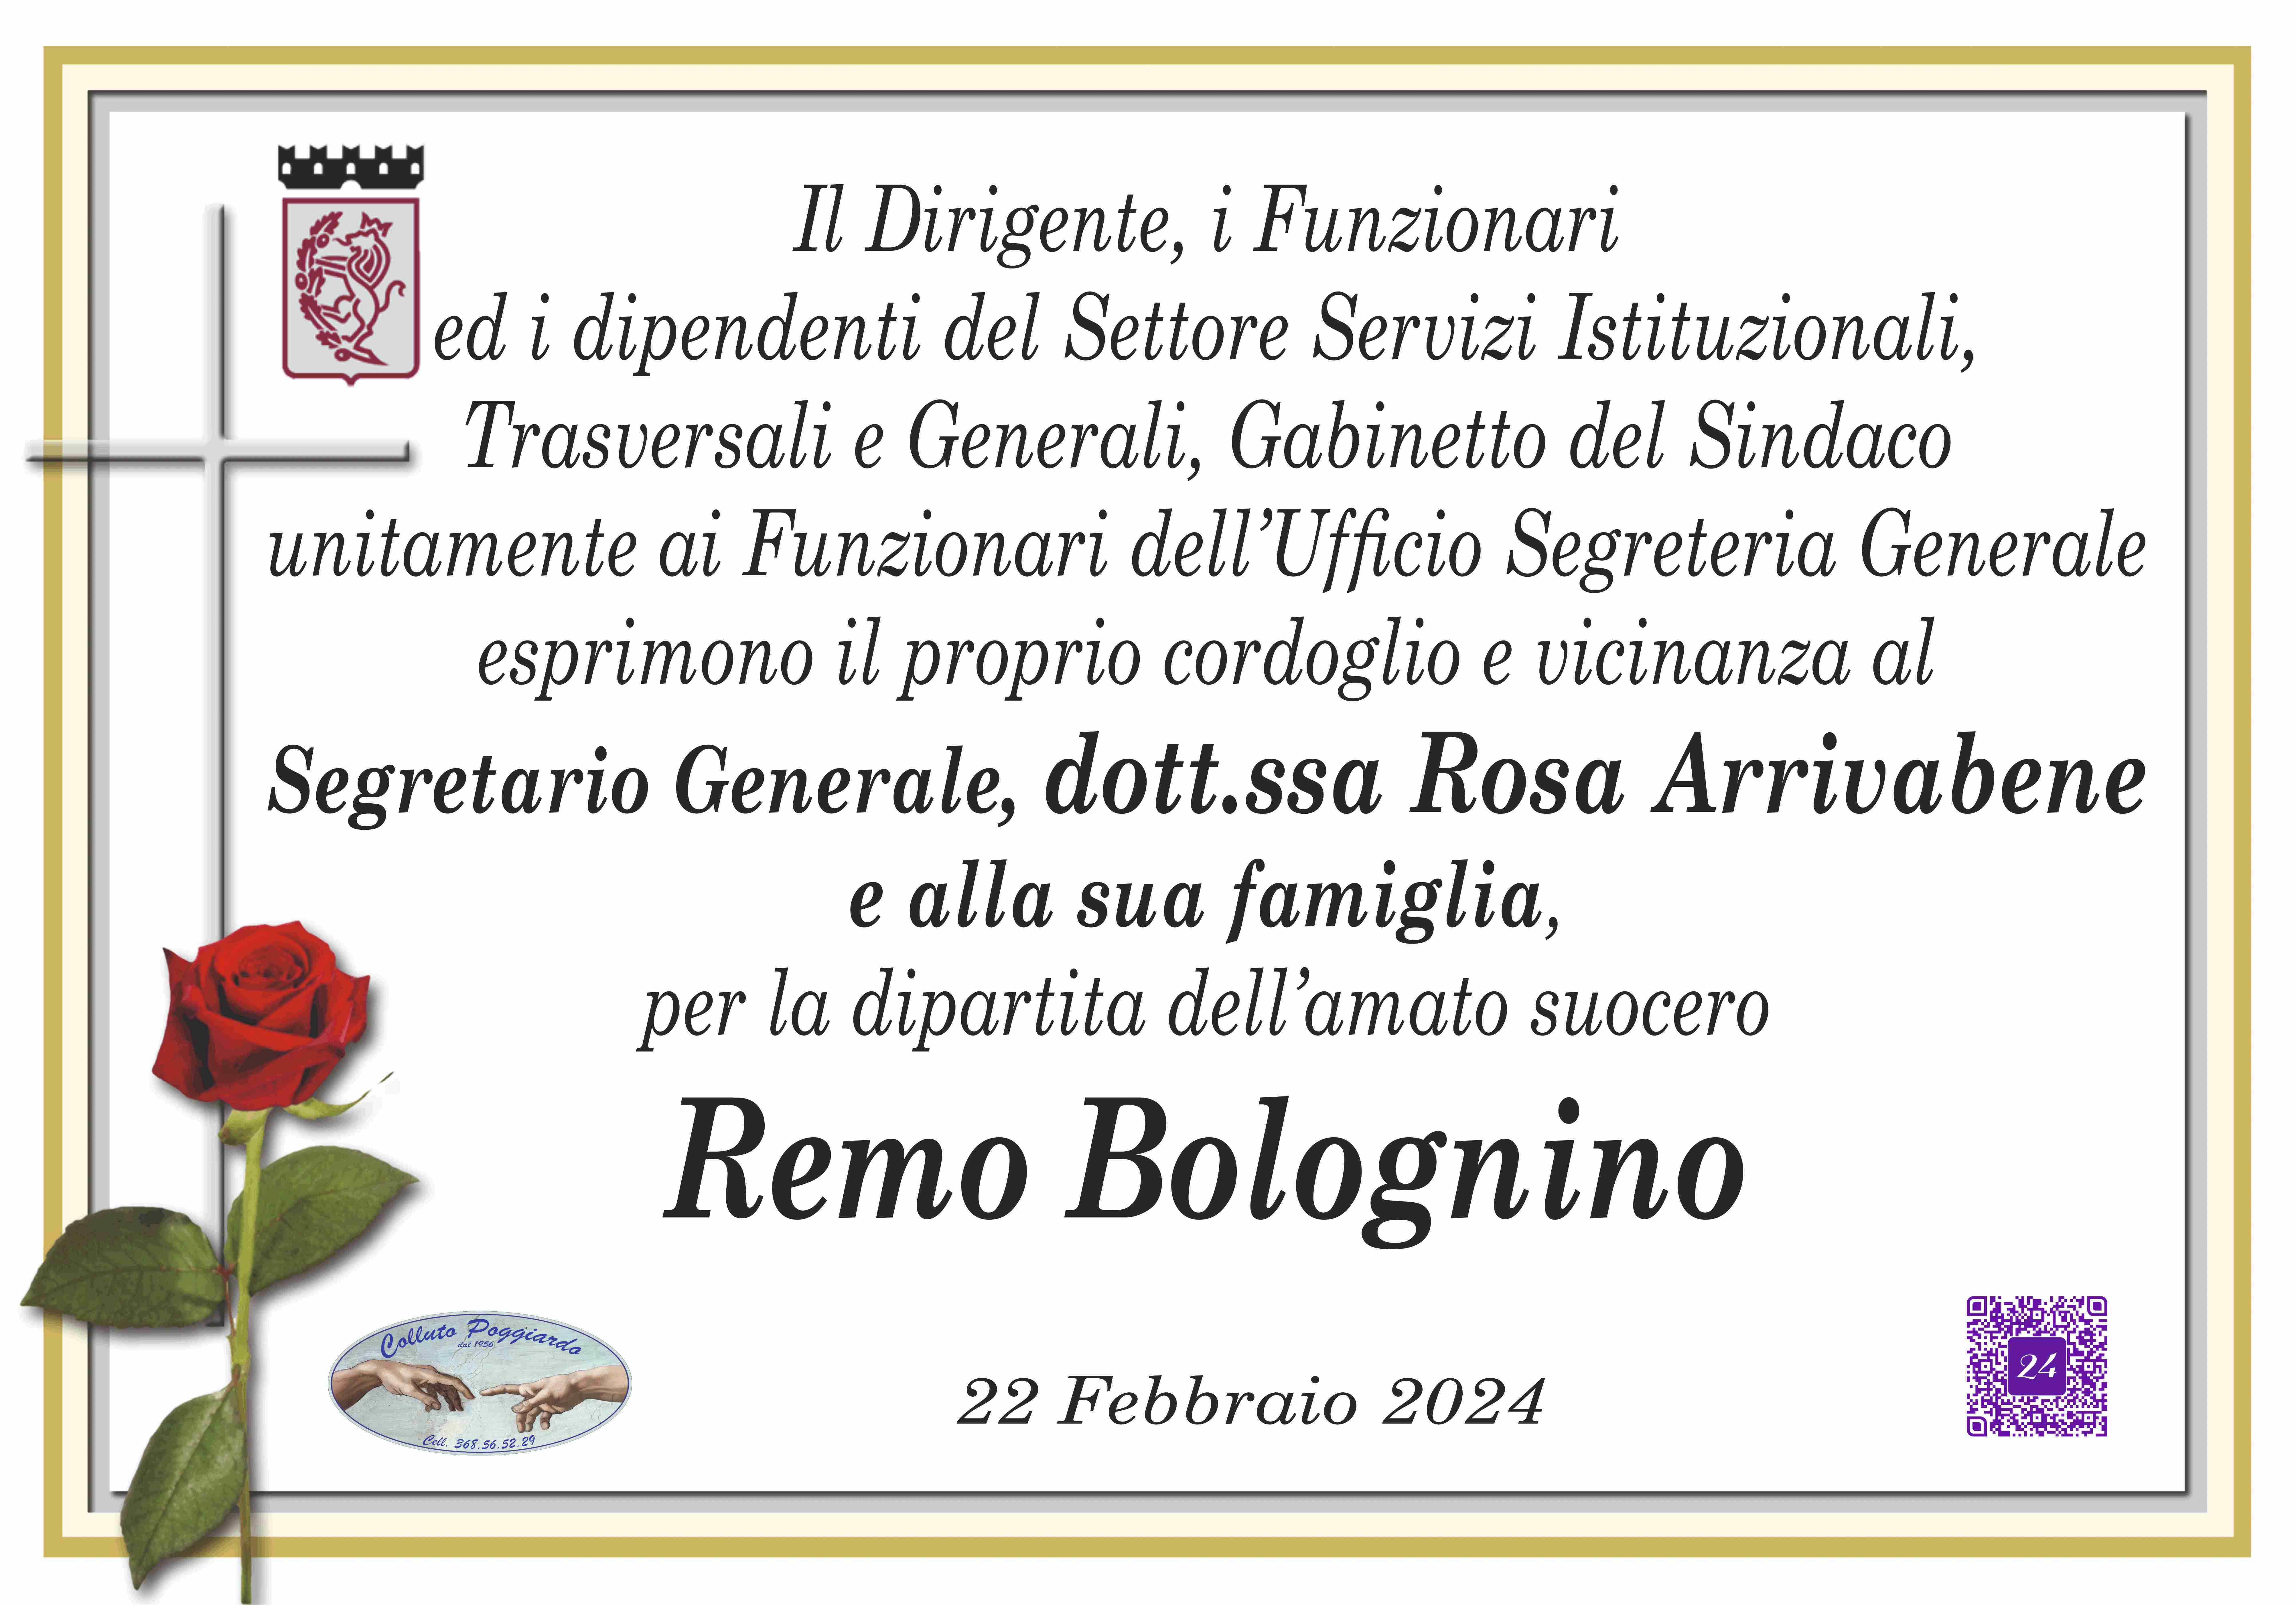 Remo Bolognino